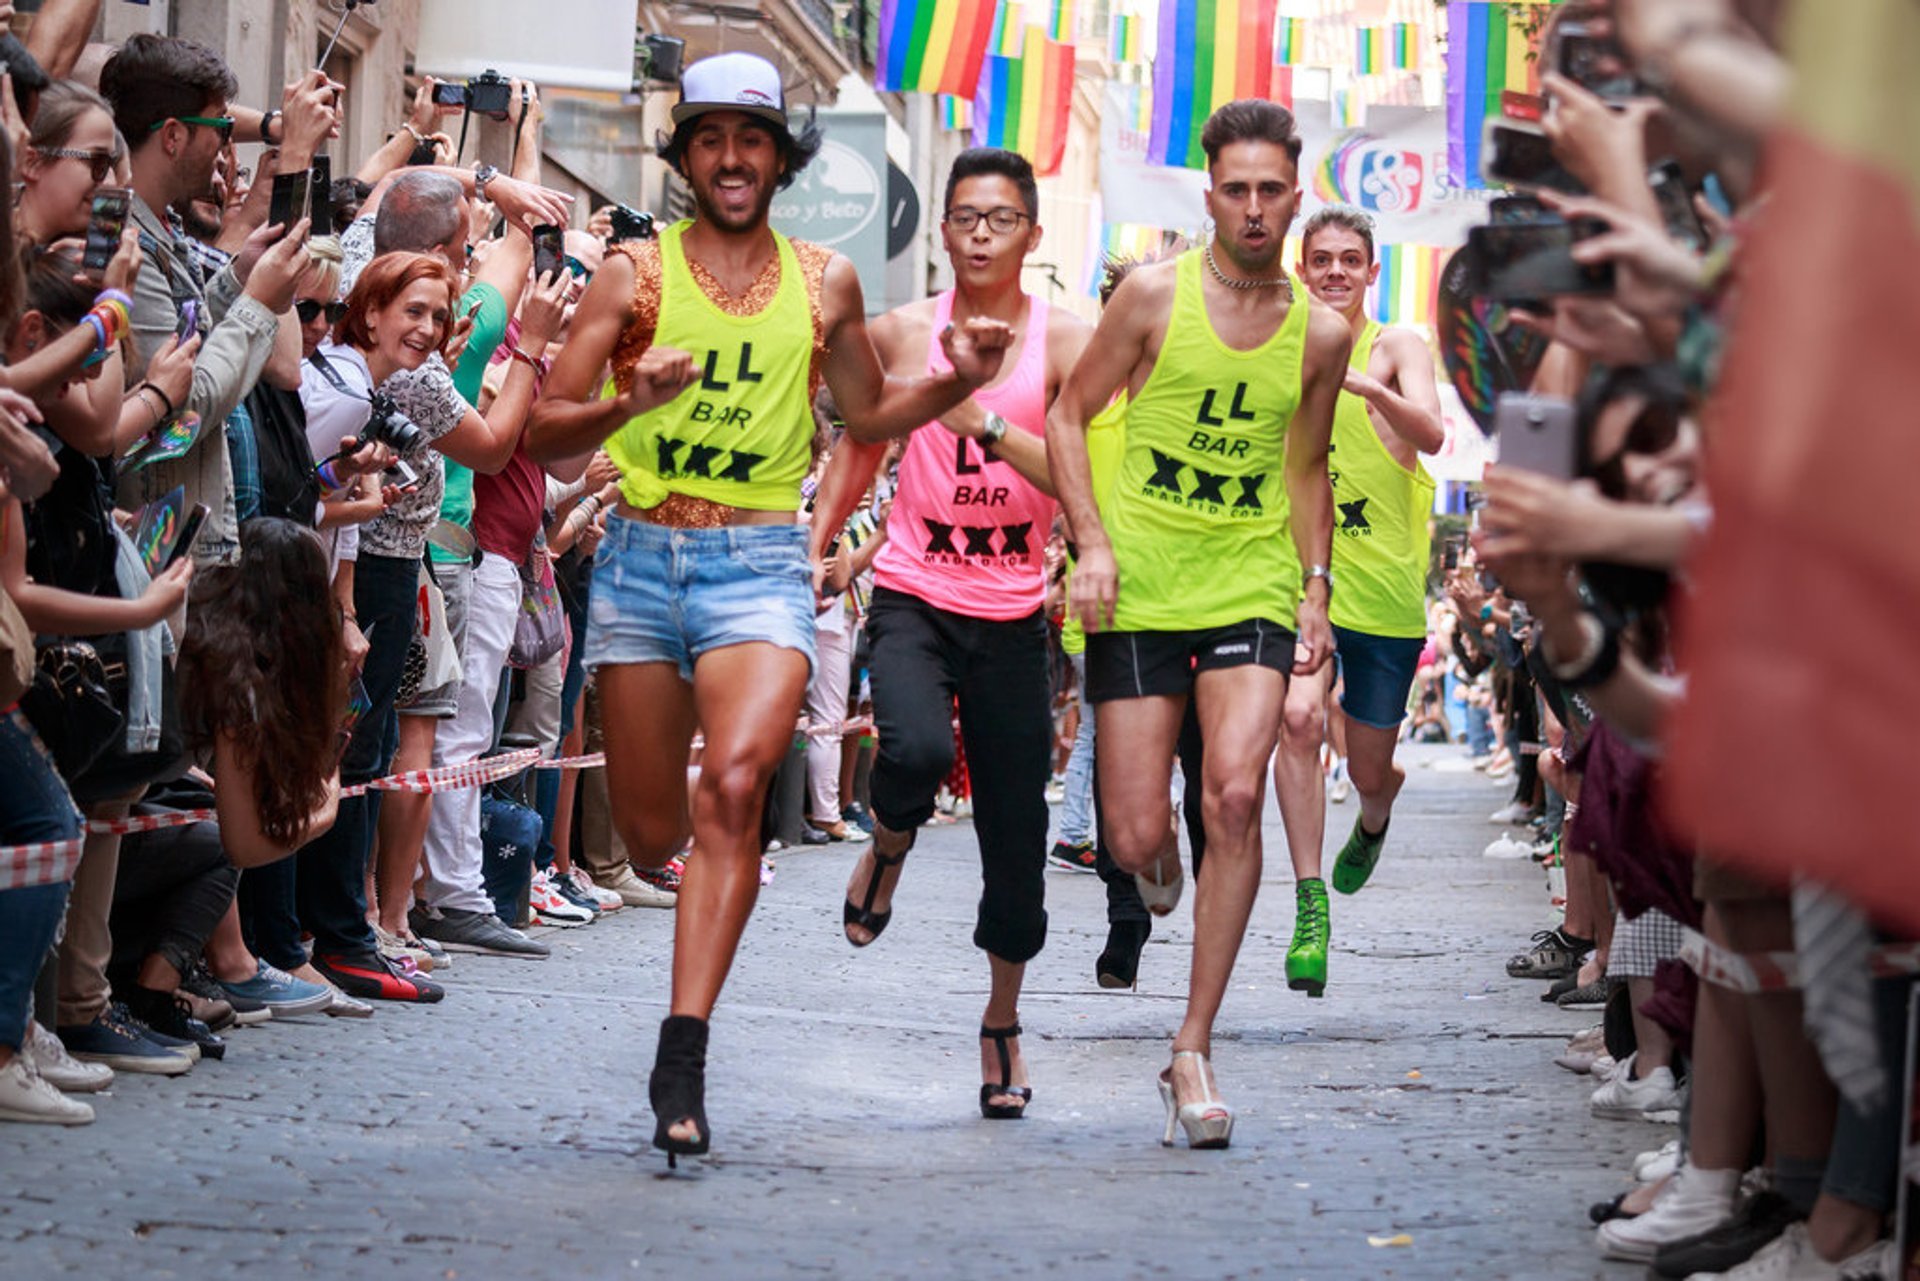 Madrid Pride Week (Orgullo Gay Madrid)